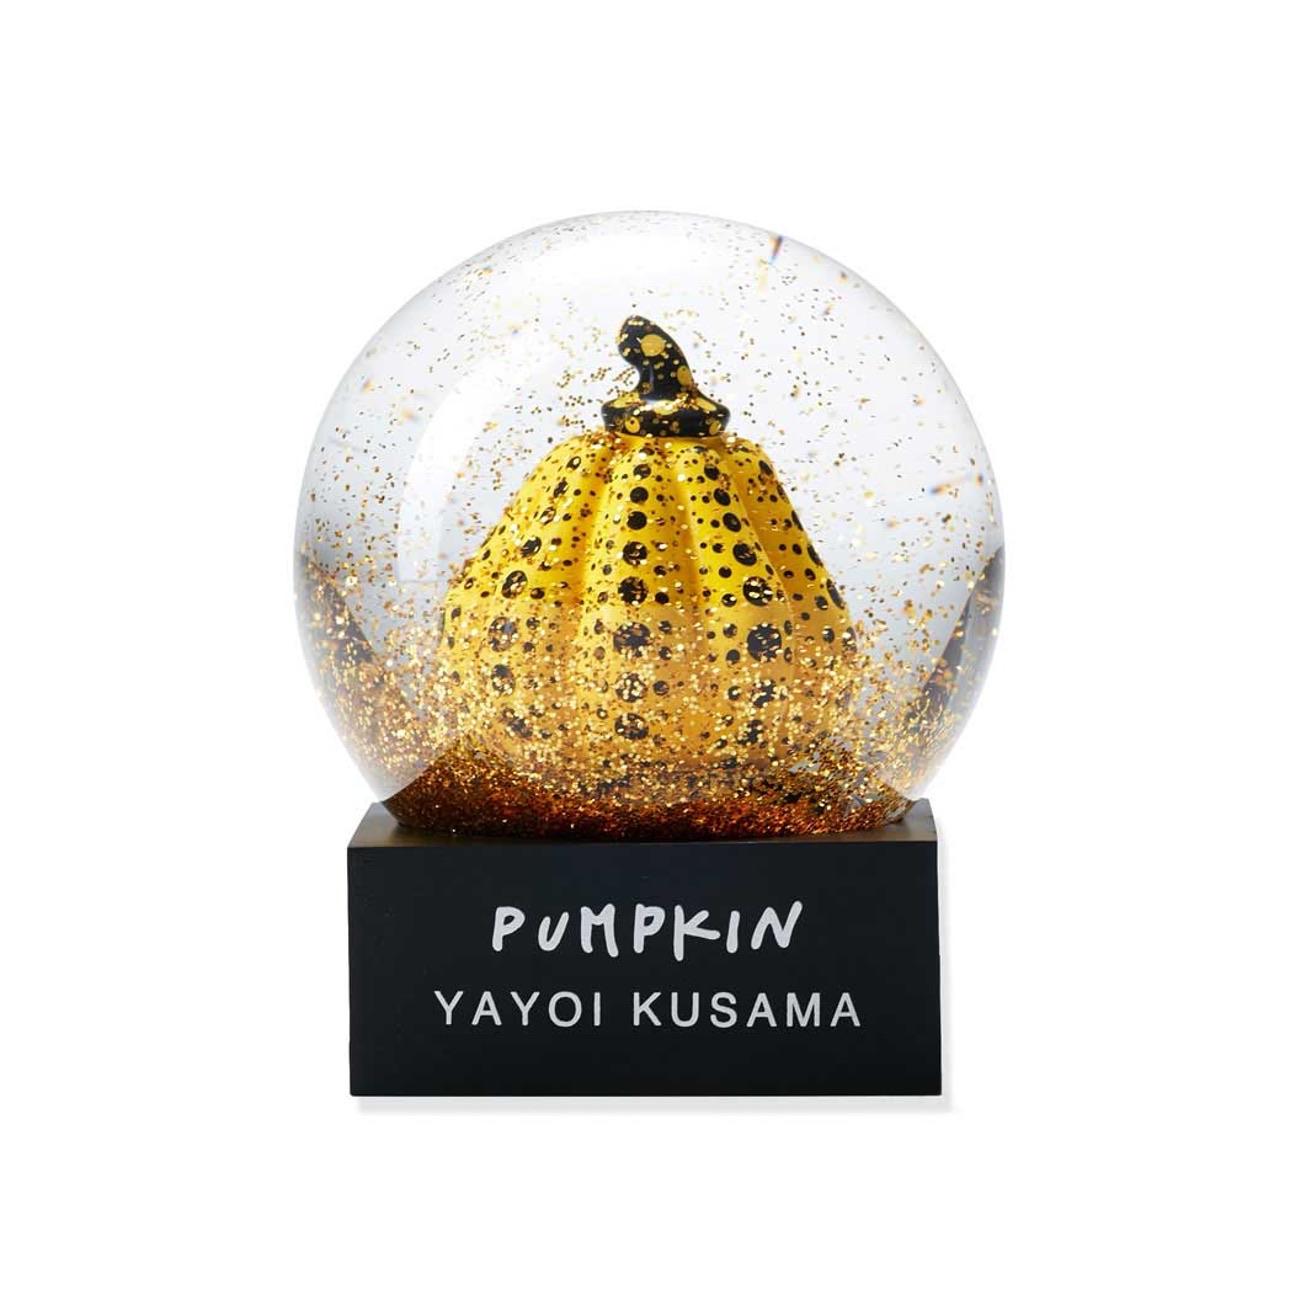 Yayoi Kusama
Dôme de la boule à neige de la citrouille jaune et noire, 2019
Verre, polyrésine, eau
3 1/10 × 2 3/5 × 2 3/5 in  8 × 6.5 × 6.5 cm